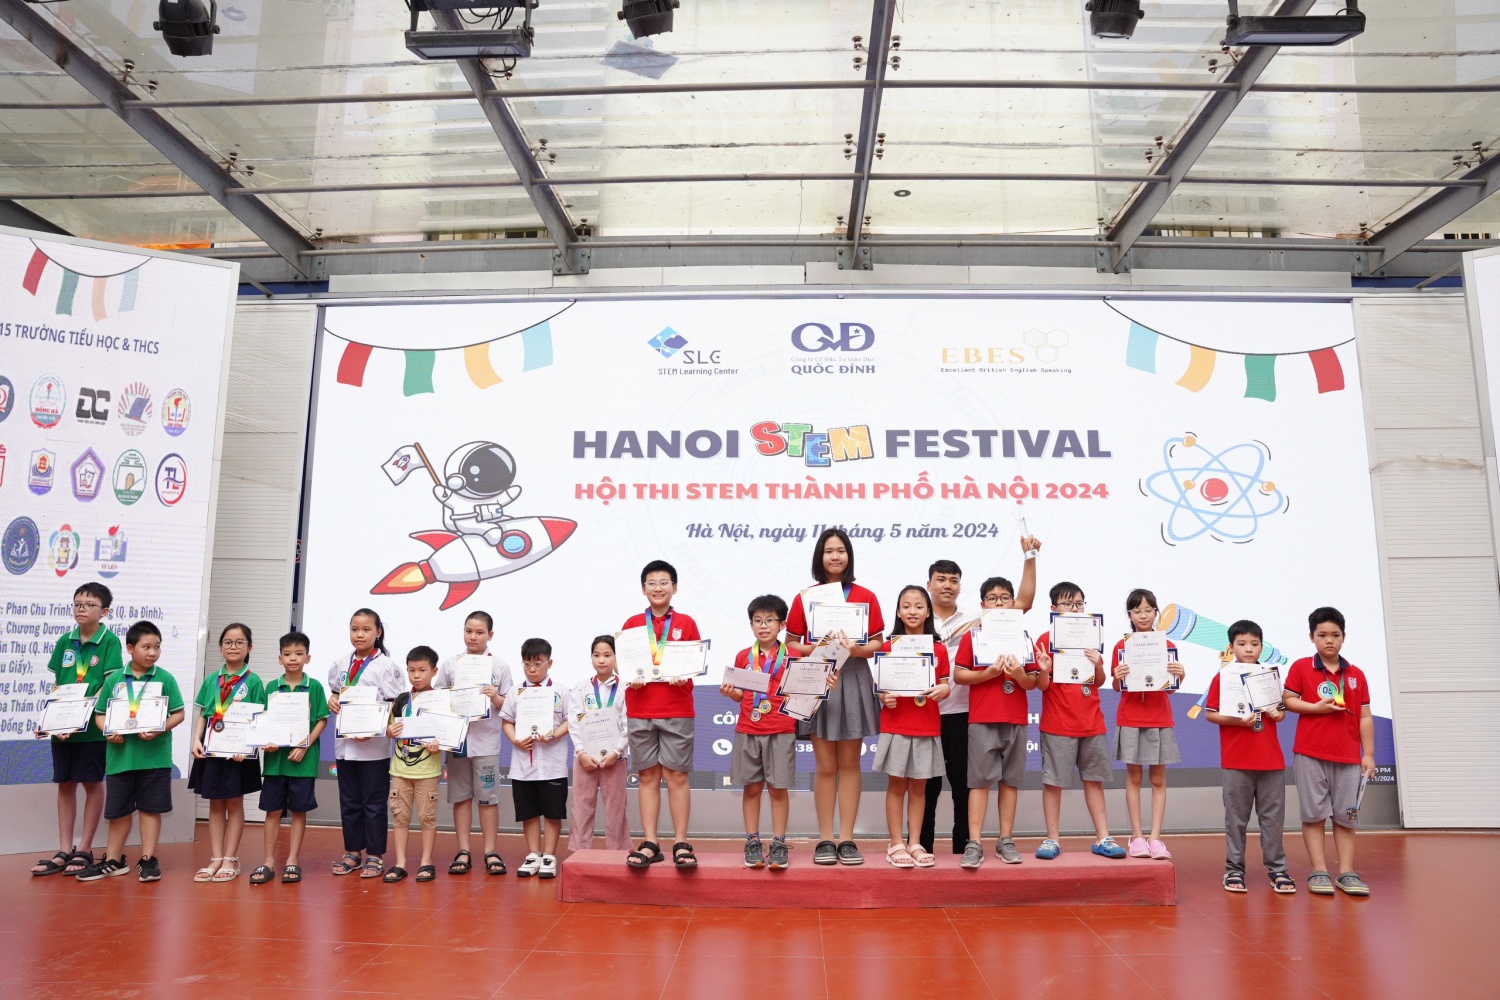 Ha Noi STEM Festival - Hội thi STEM Thành phố Hà Nội